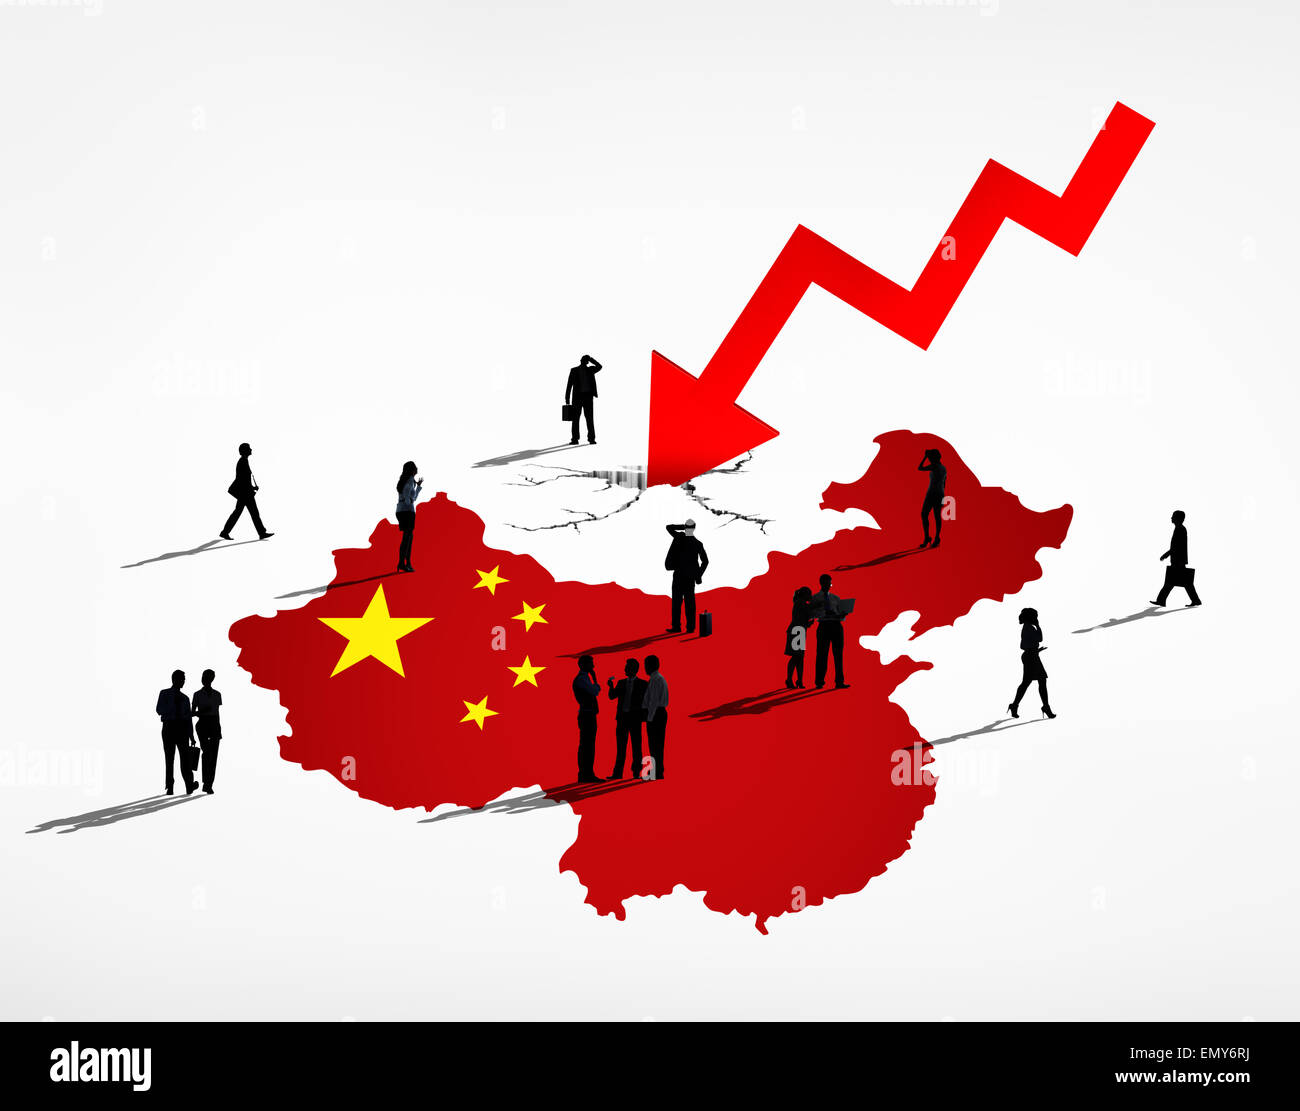 Экономическая организация китая. Экономика Китая. Китай кризис. Китайский экономический кризис. Китайская экономическая модель.